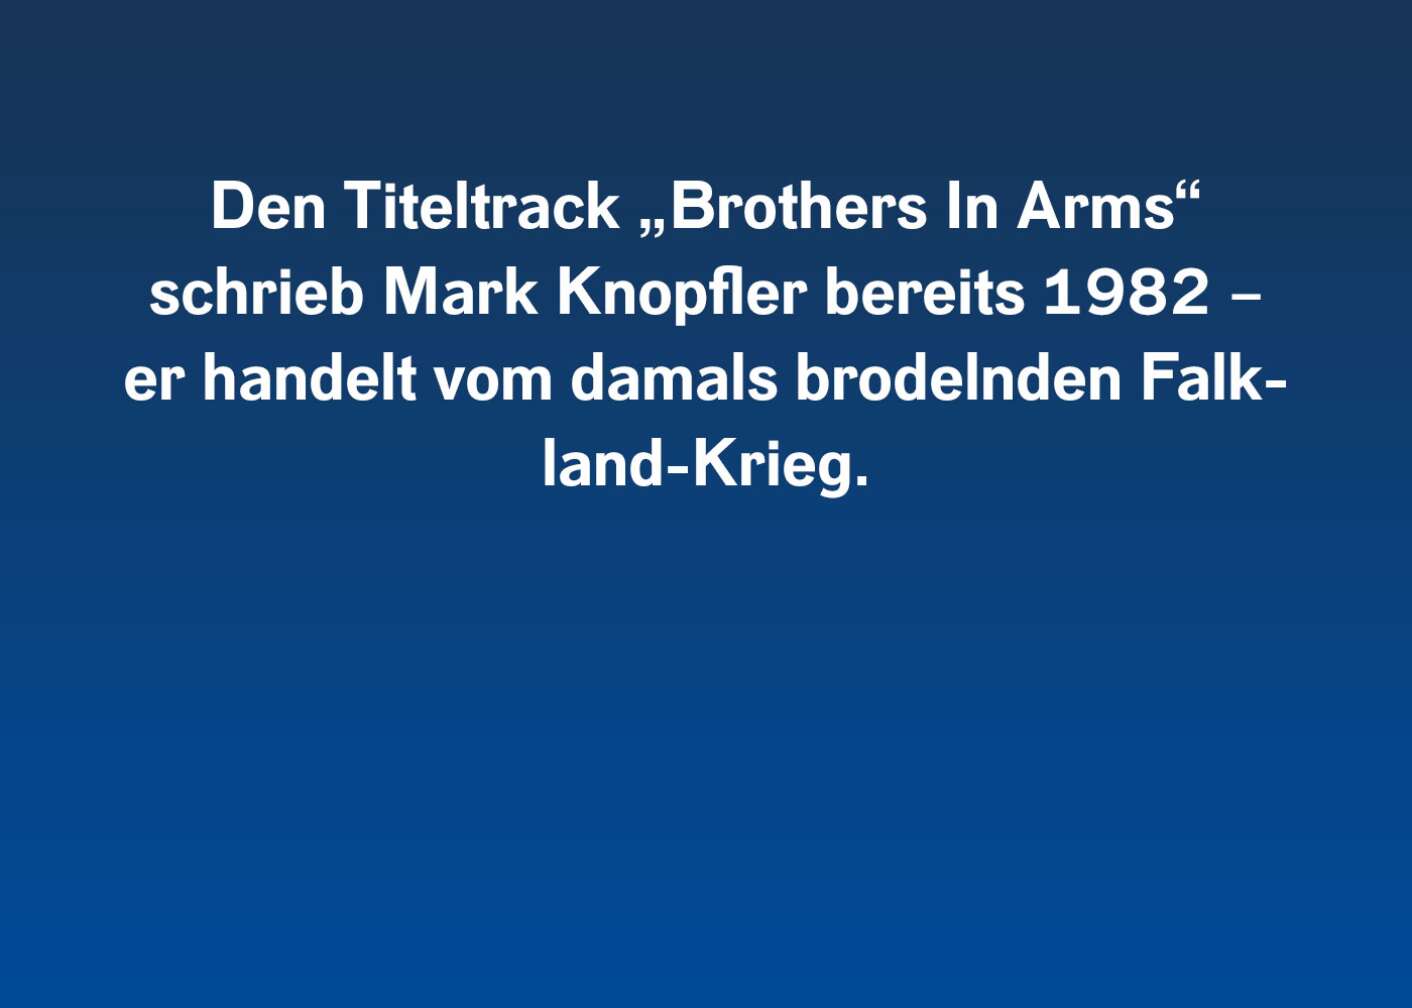 6 Fakten über <em>Brothers In Arms</em> (1)